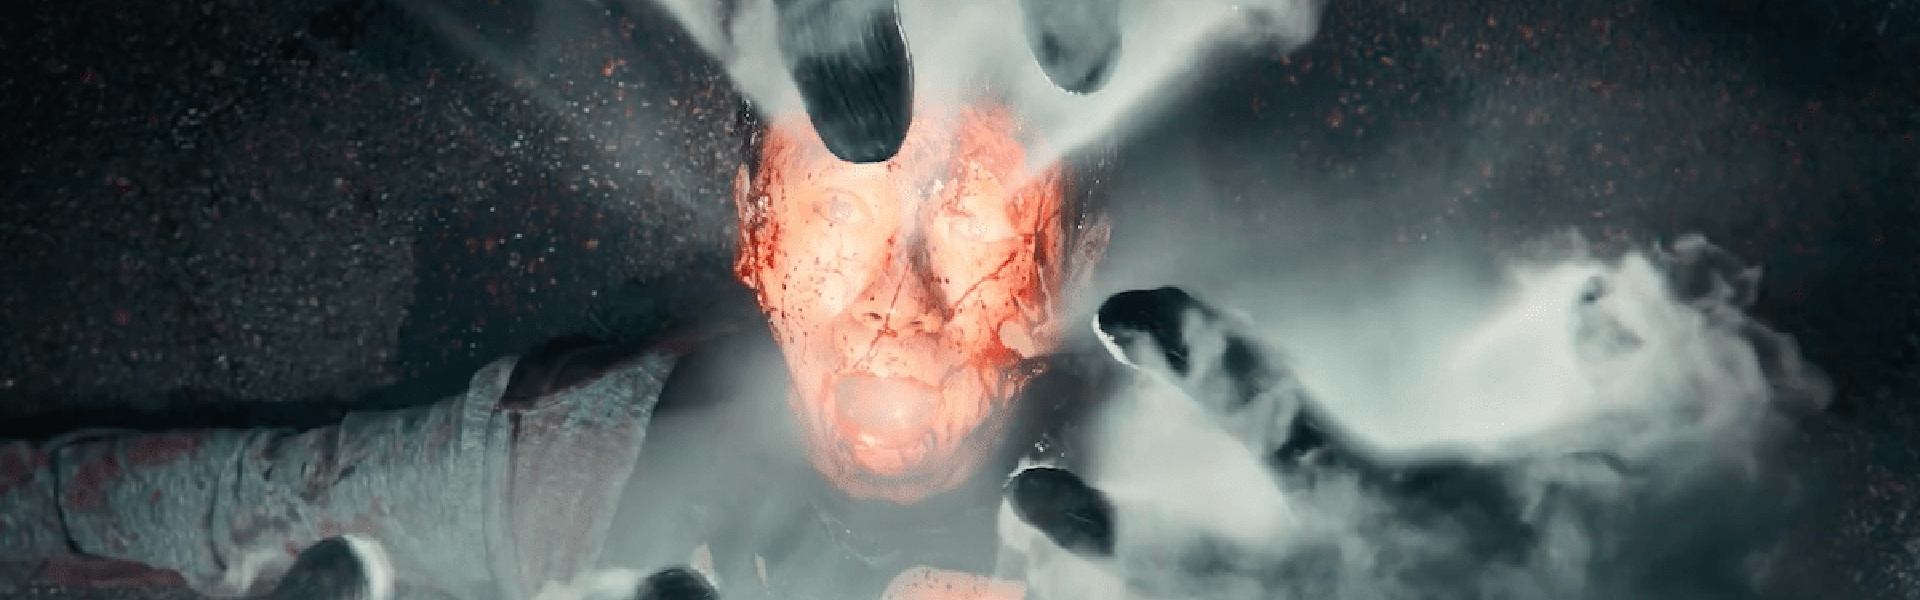 Review phim Hellbound - Tác phẩm gây ám ảnh đến từ Netflix